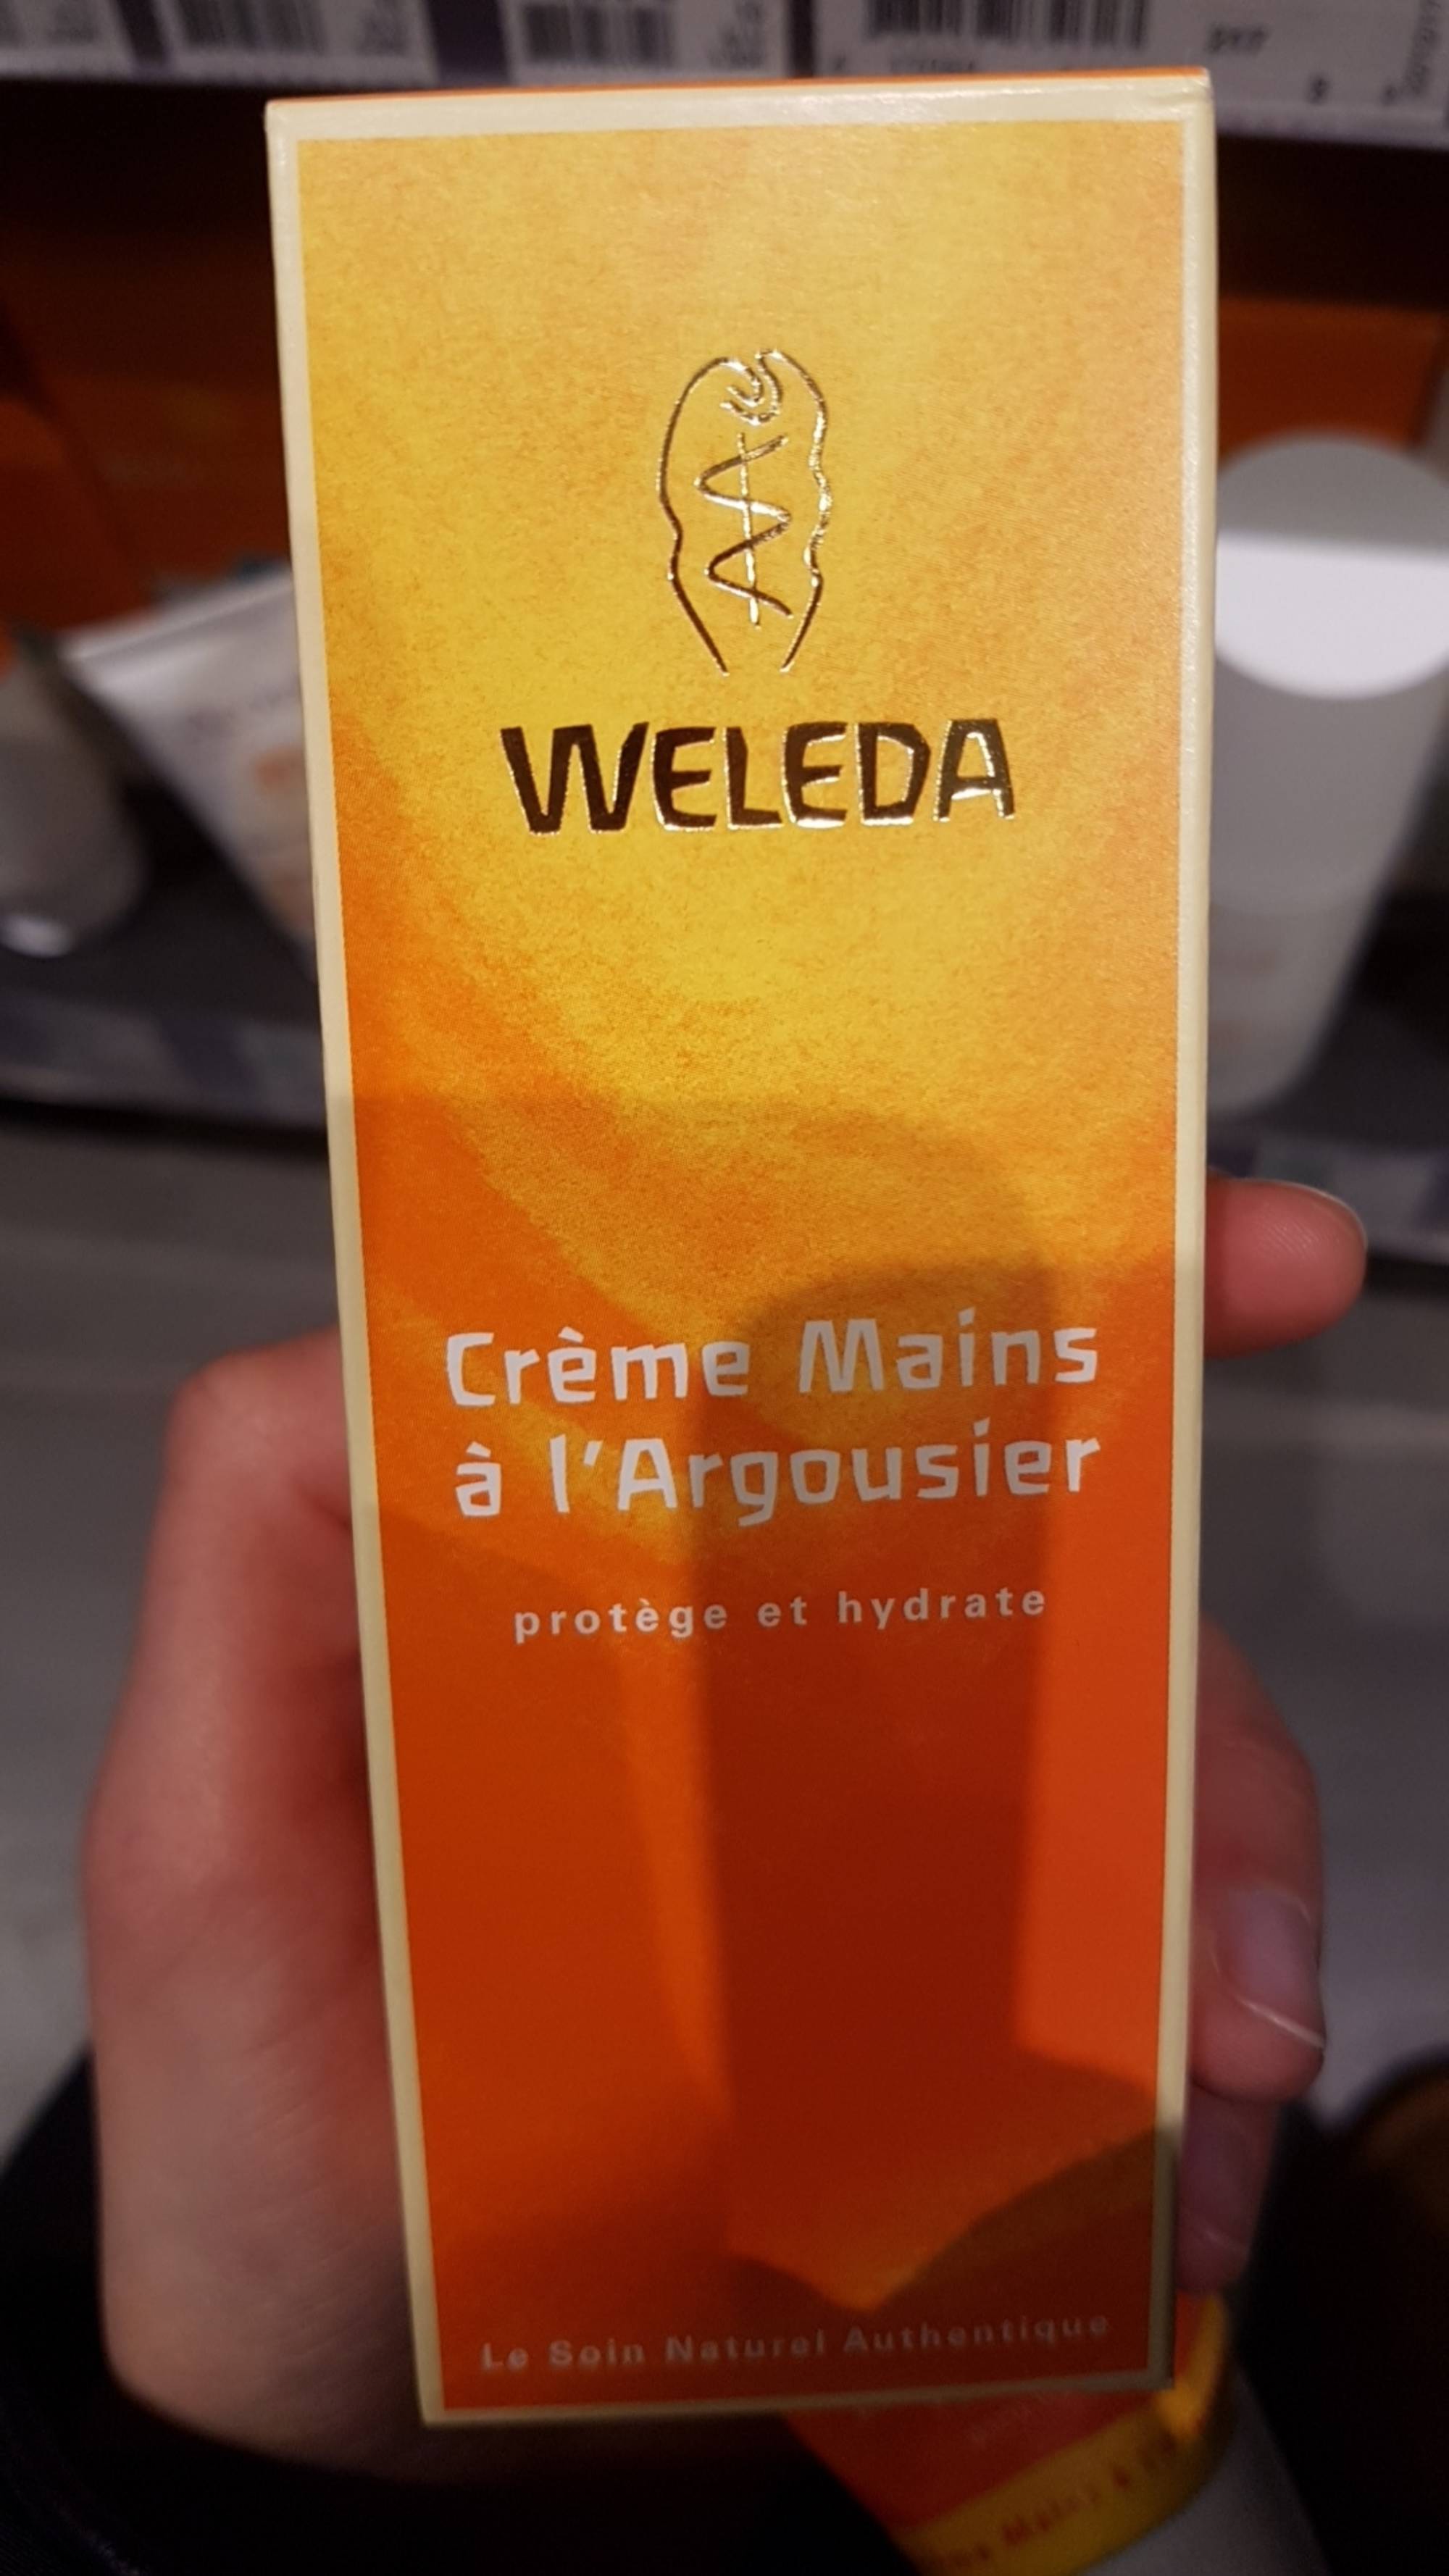 Crème Mains à l'Argousier - Weleda